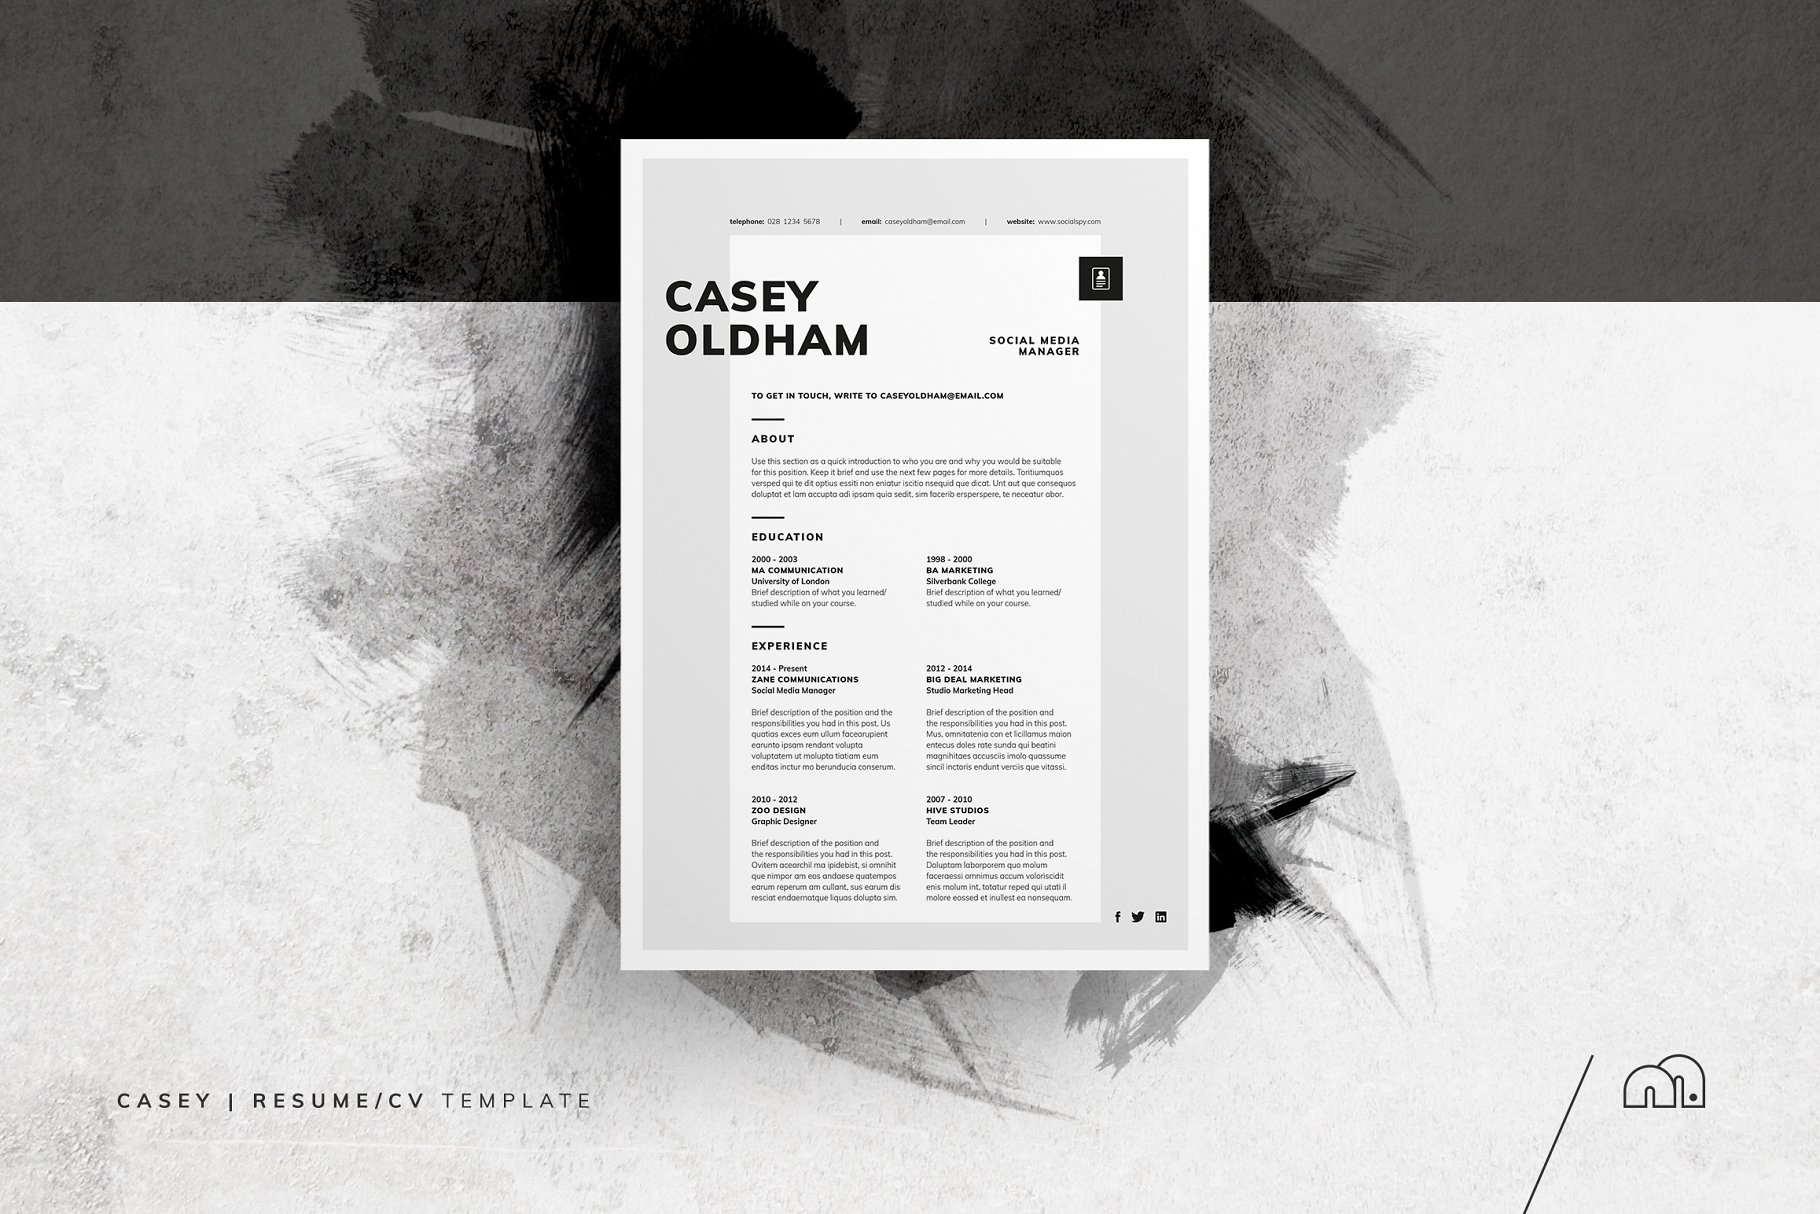 高端个性设计简历模板 Casey – ResumeCV #1